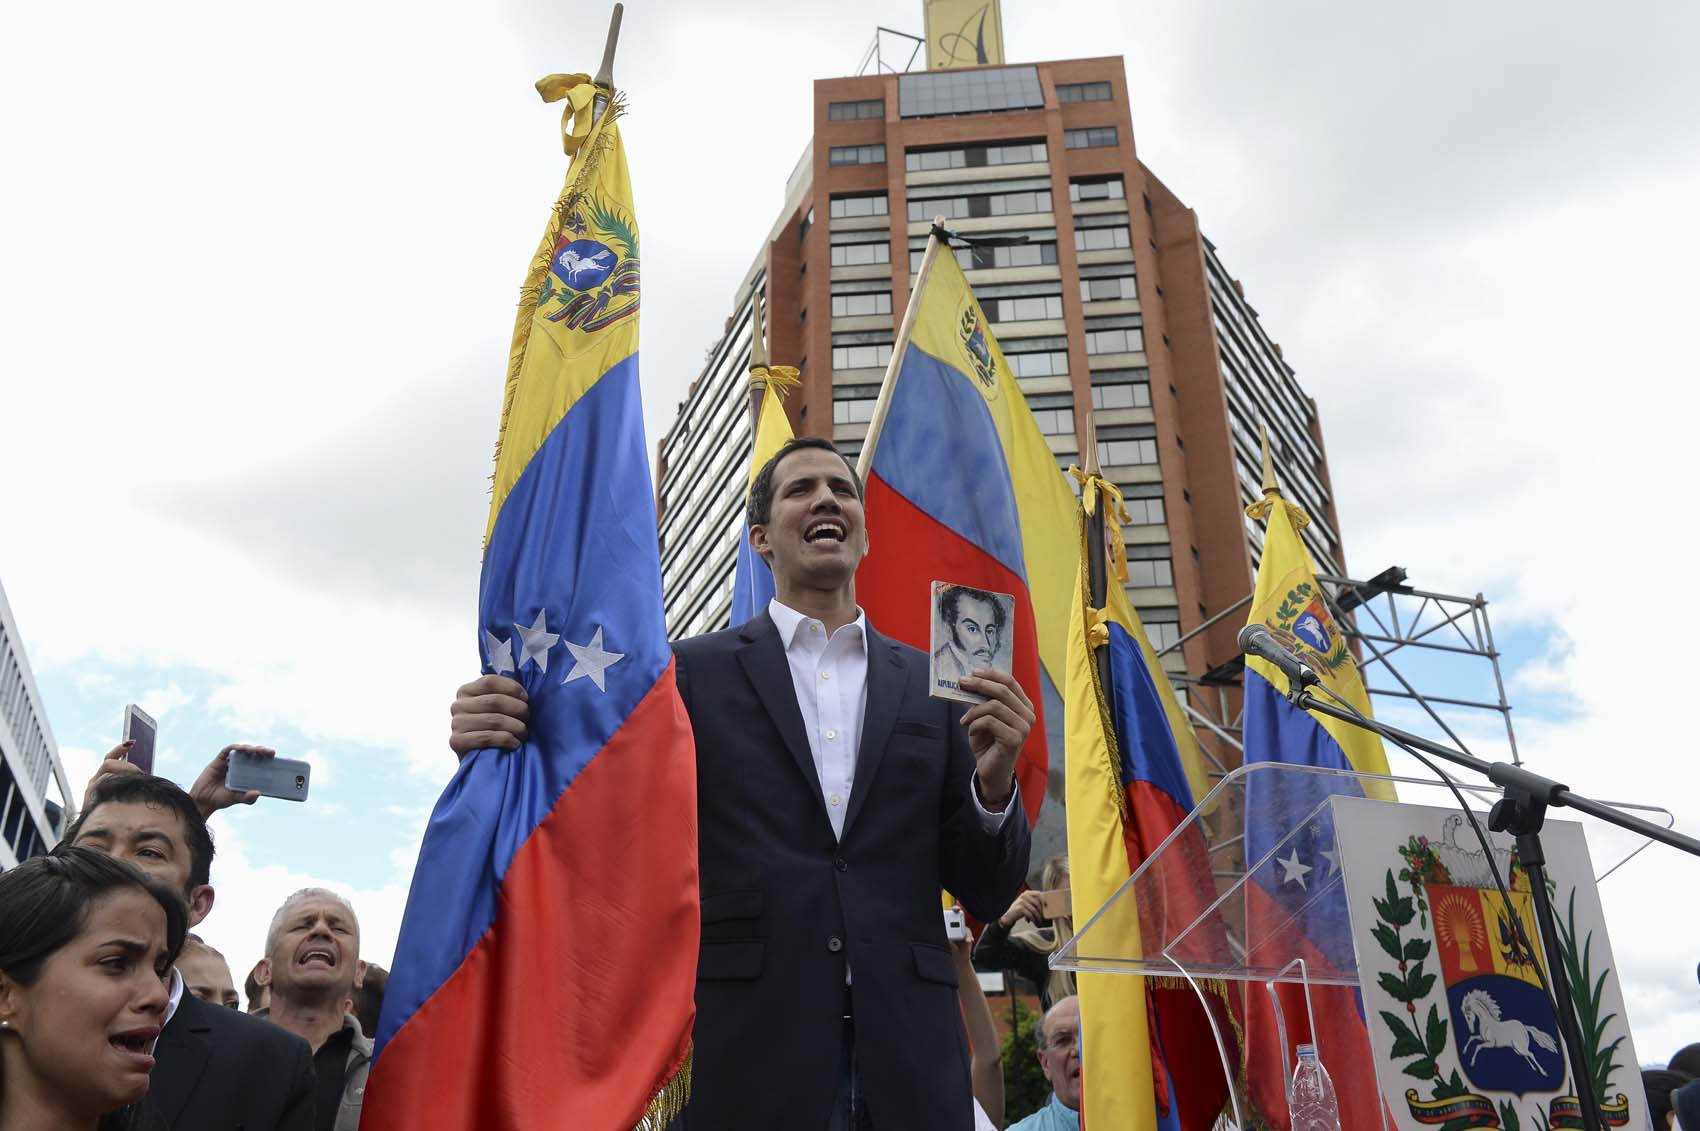 “En todo amar y servir”: Juan Guaidó actualizó su bio en redes para afirmar su compromiso con Venezuela